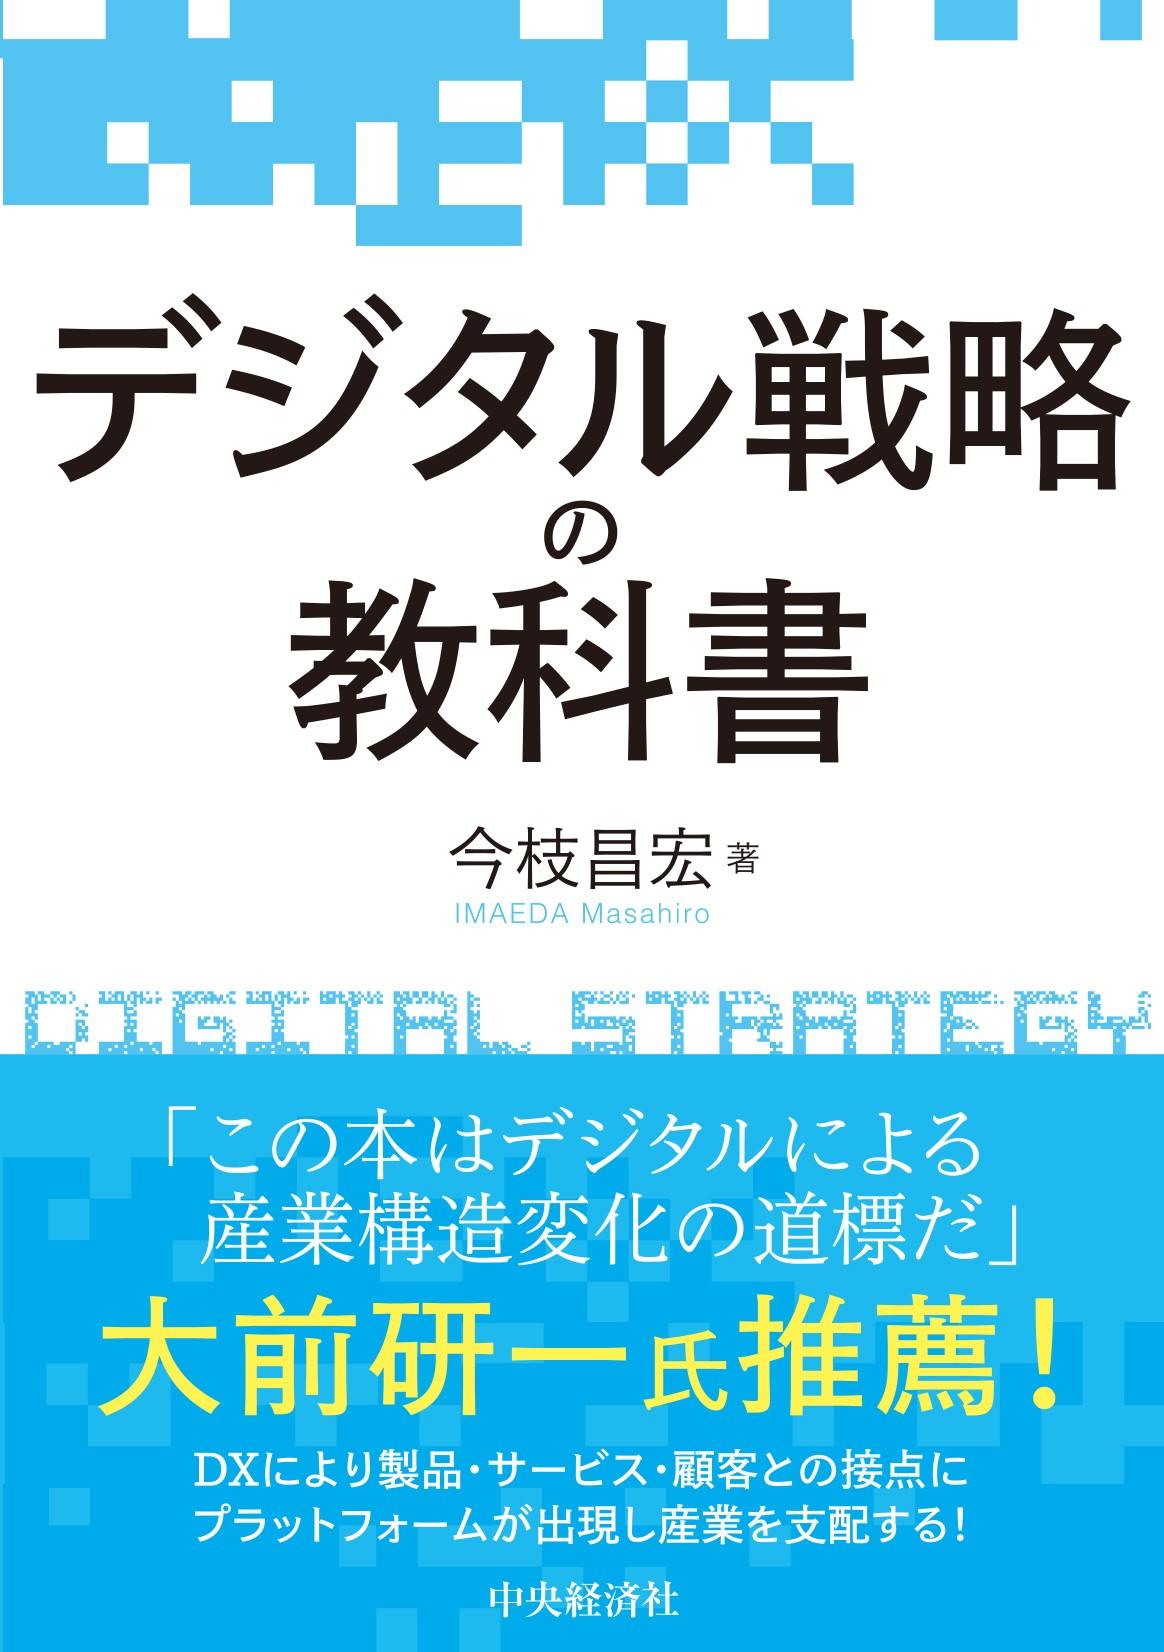 デジタル戦略の教科書